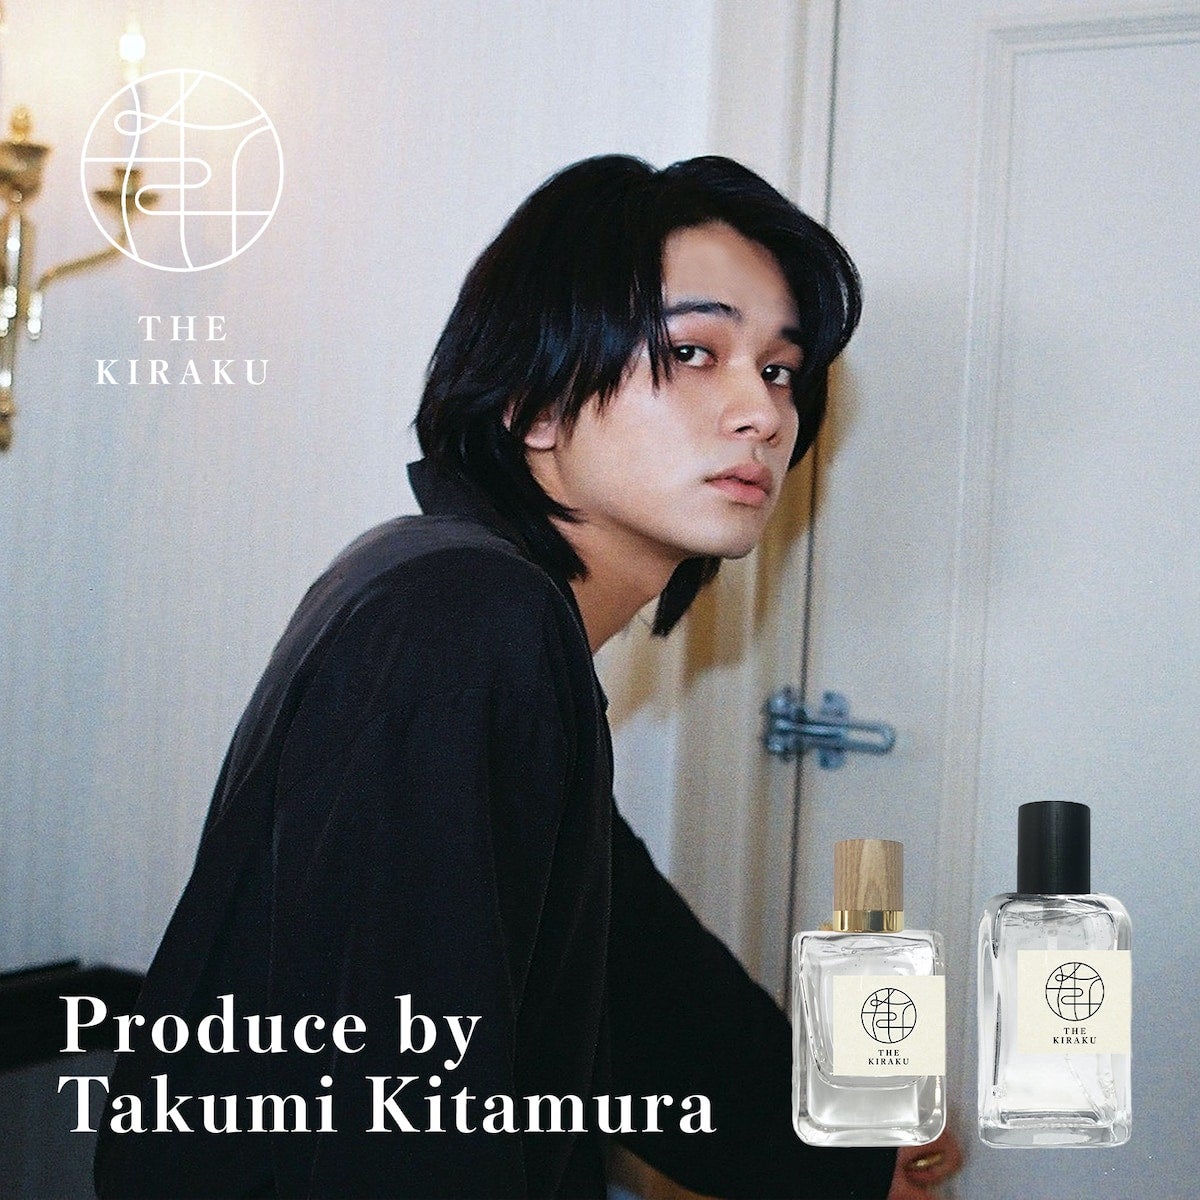 北村匠海プロデュース、ジェンダーレス香水“THE KIRAKU”登場 - モデルプレス